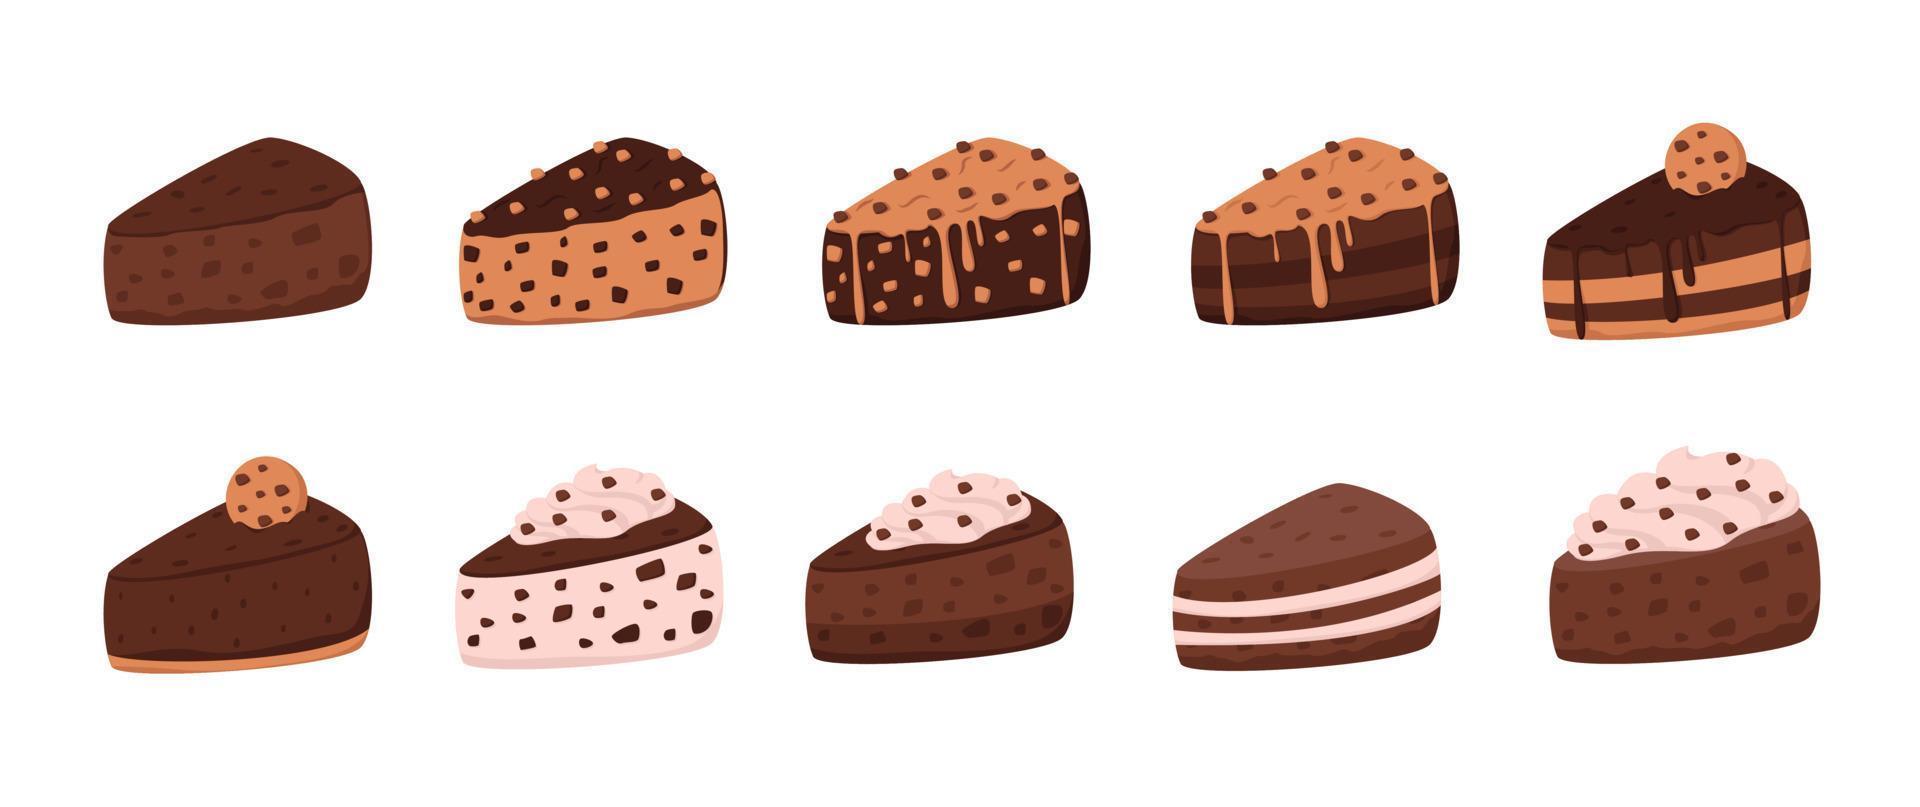 juego de pastel de chocolate con chispas de chocolate, topping de galletas y crema batida vector